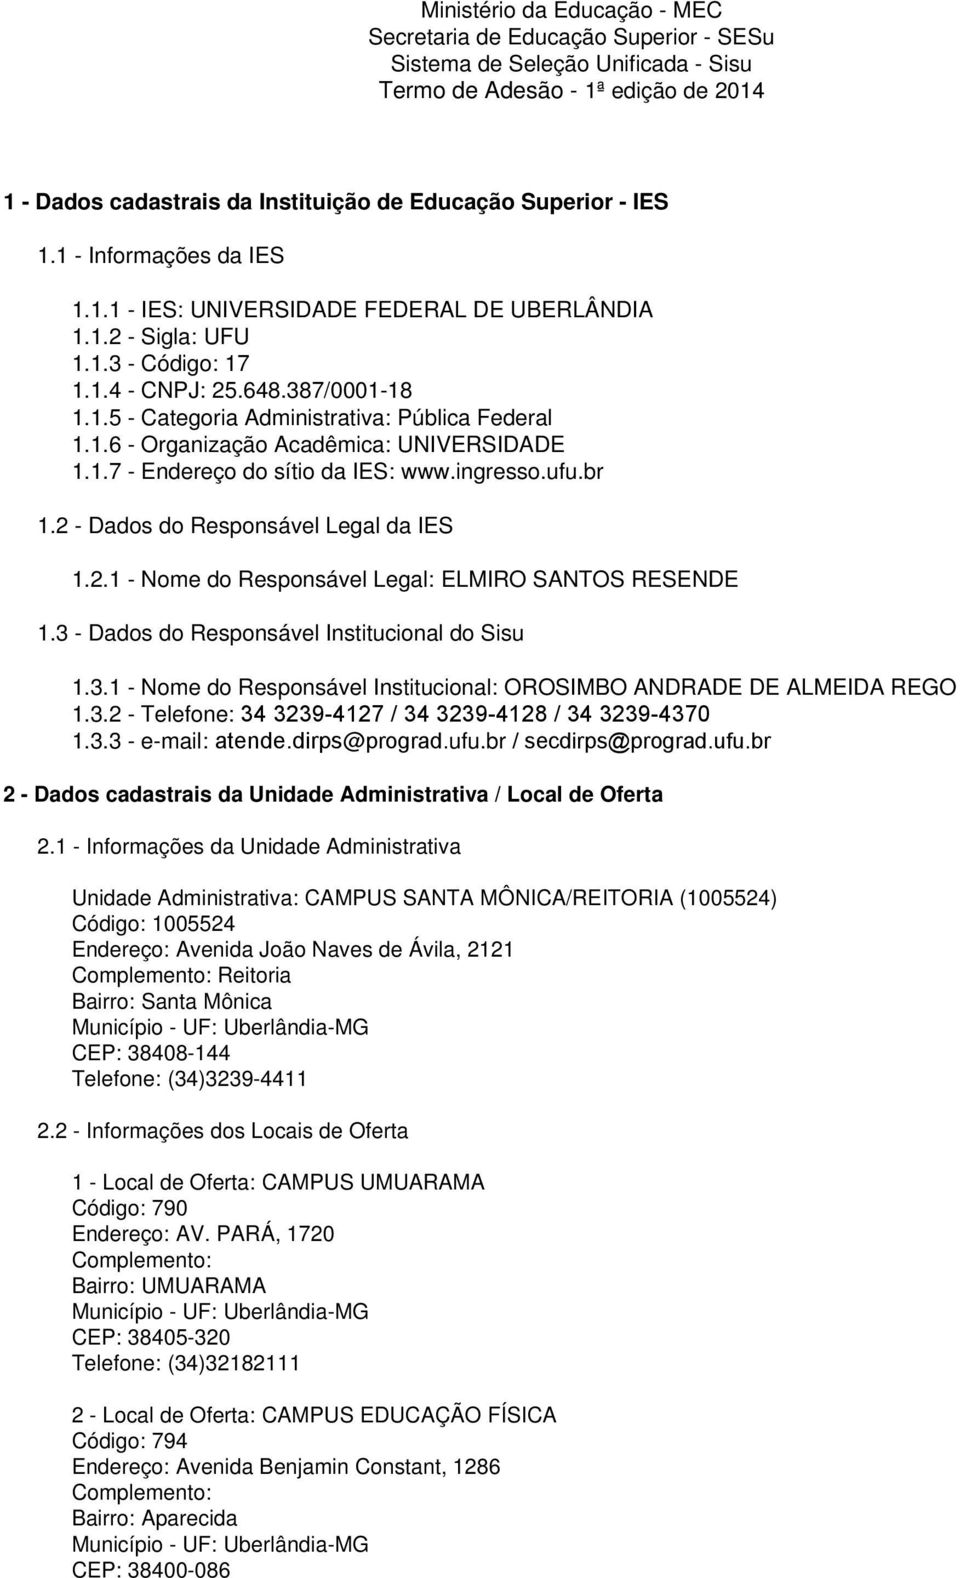 1.6 - Organização Acadêmica: UNIVERSIDADE 1.1.7 - Endereço do sítio da IES: www.ingresso.ufu.br 1.2 - Dados do Responsável Legal da IES 1.2.1 - Nome do Responsável Legal: ELMIRO SANTOS RESENDE 1.